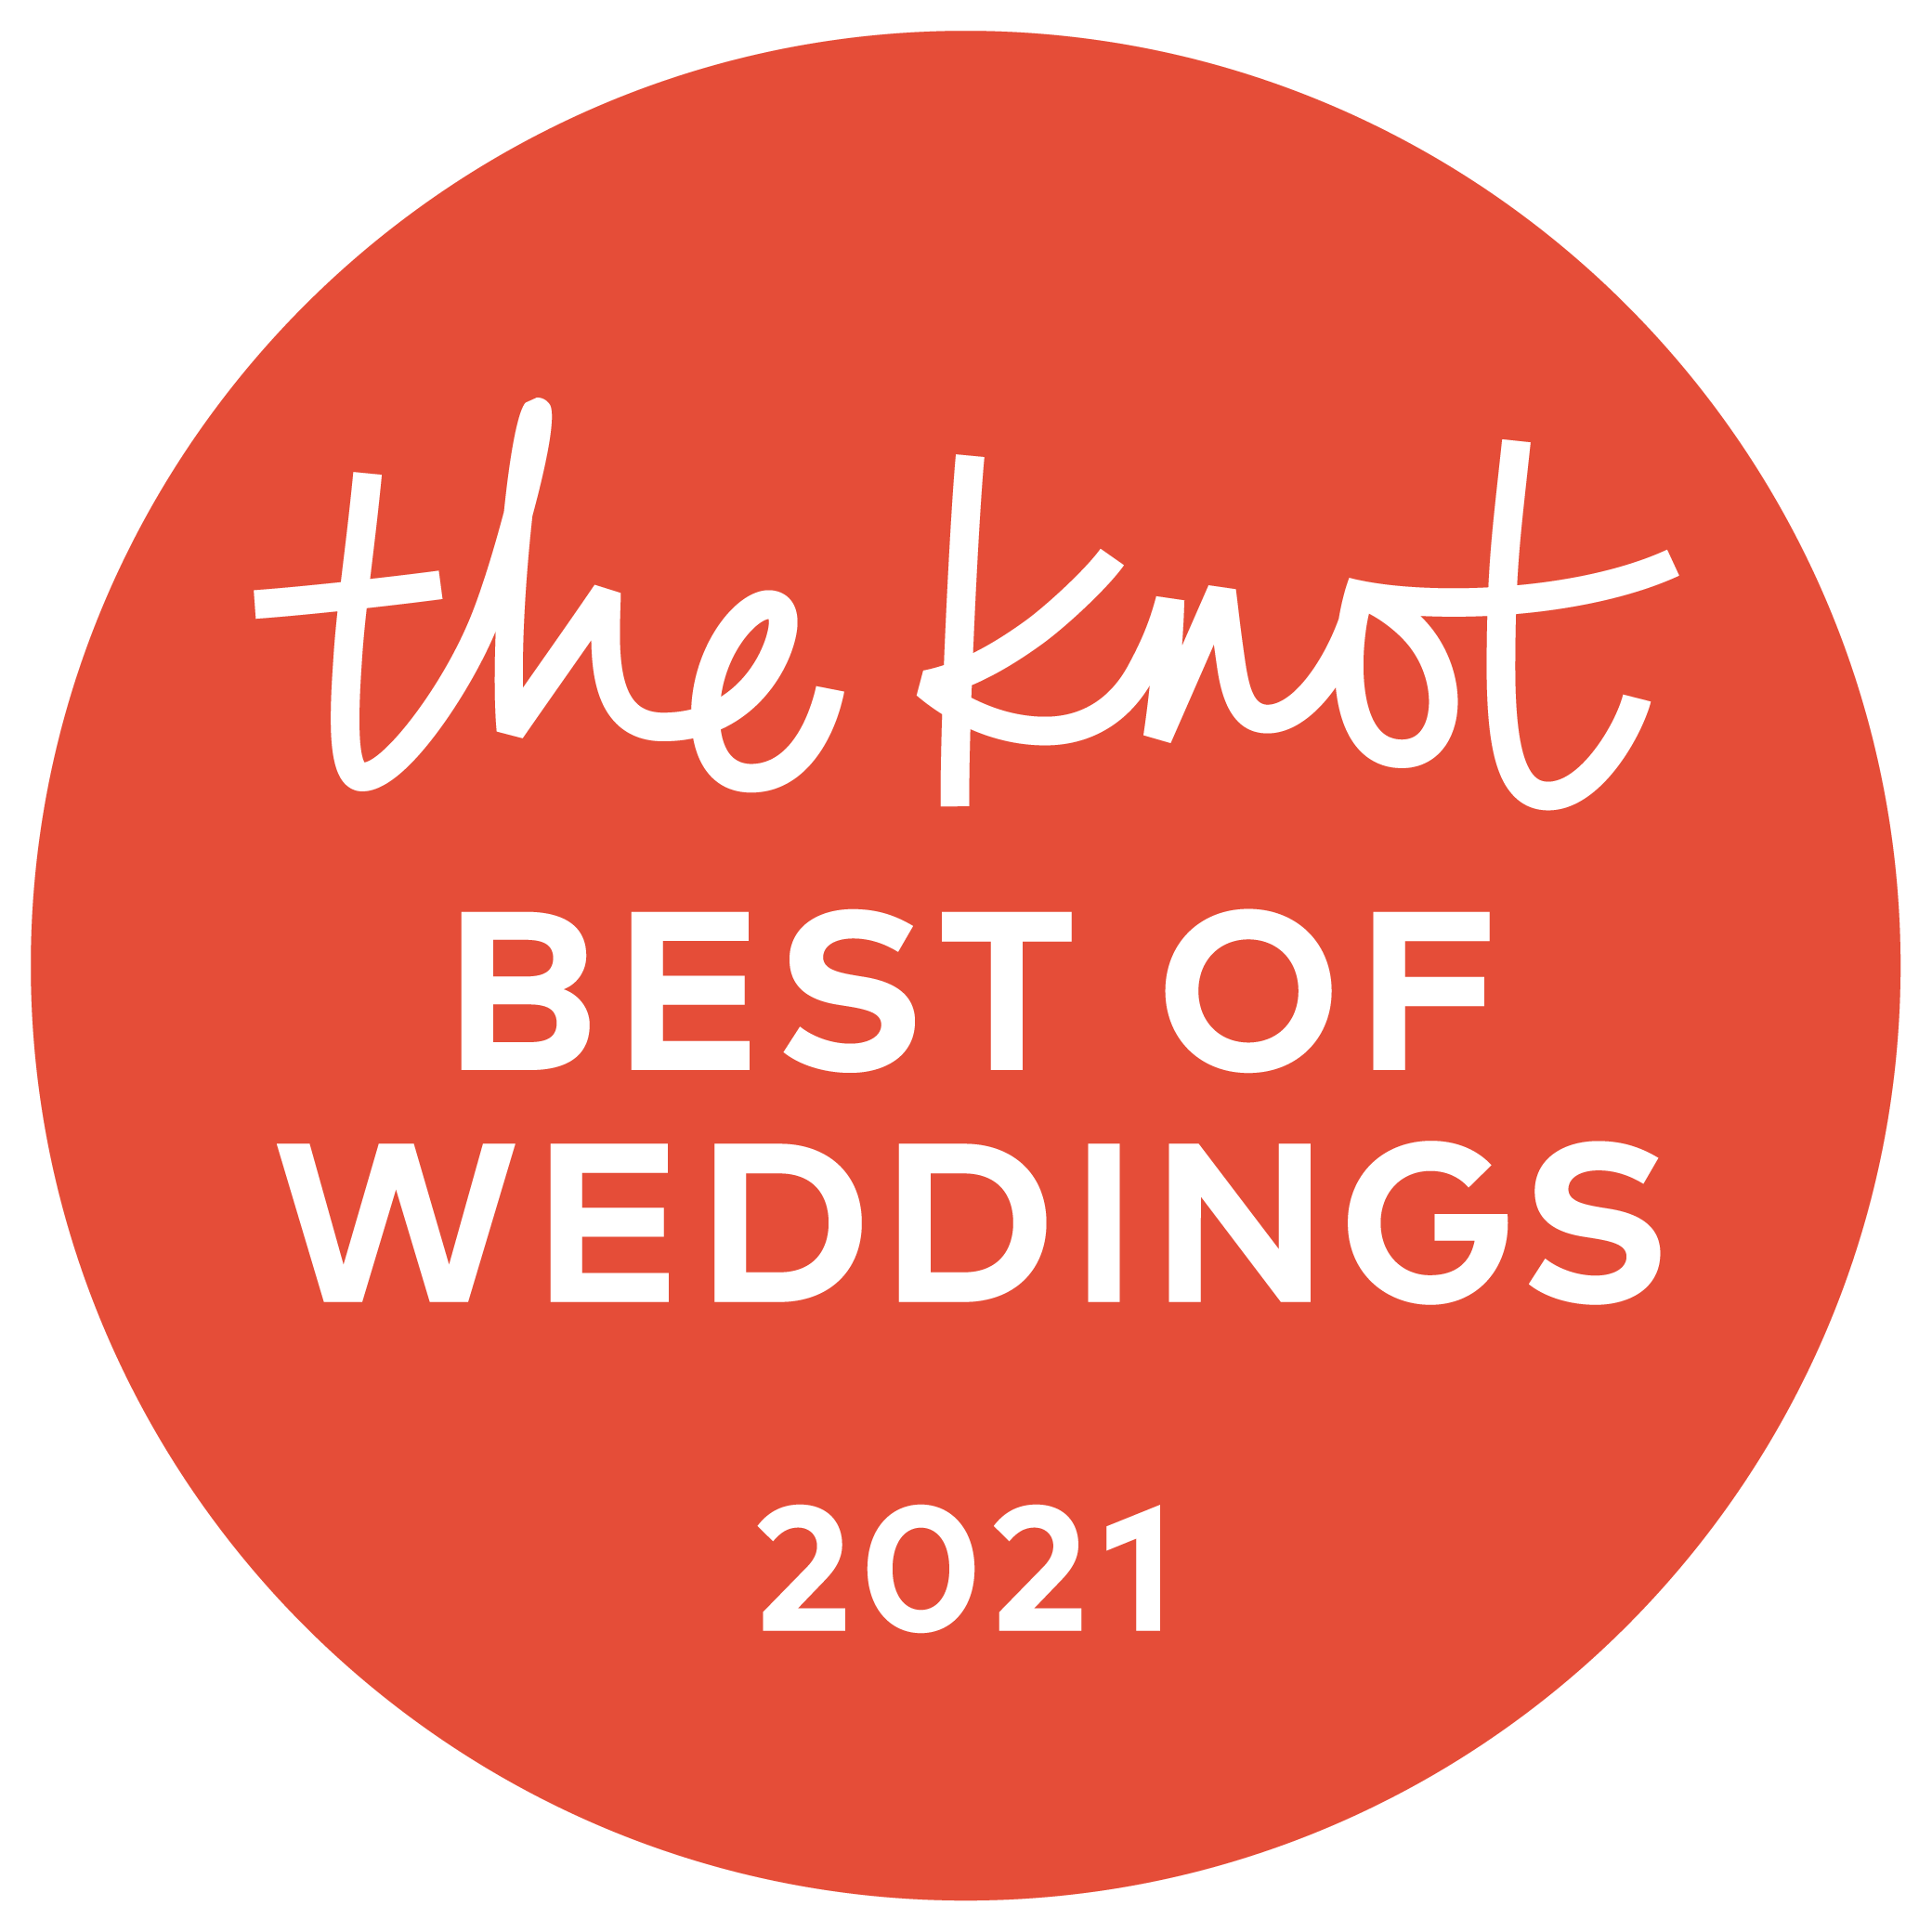 knot_bestofweddings-2020.png